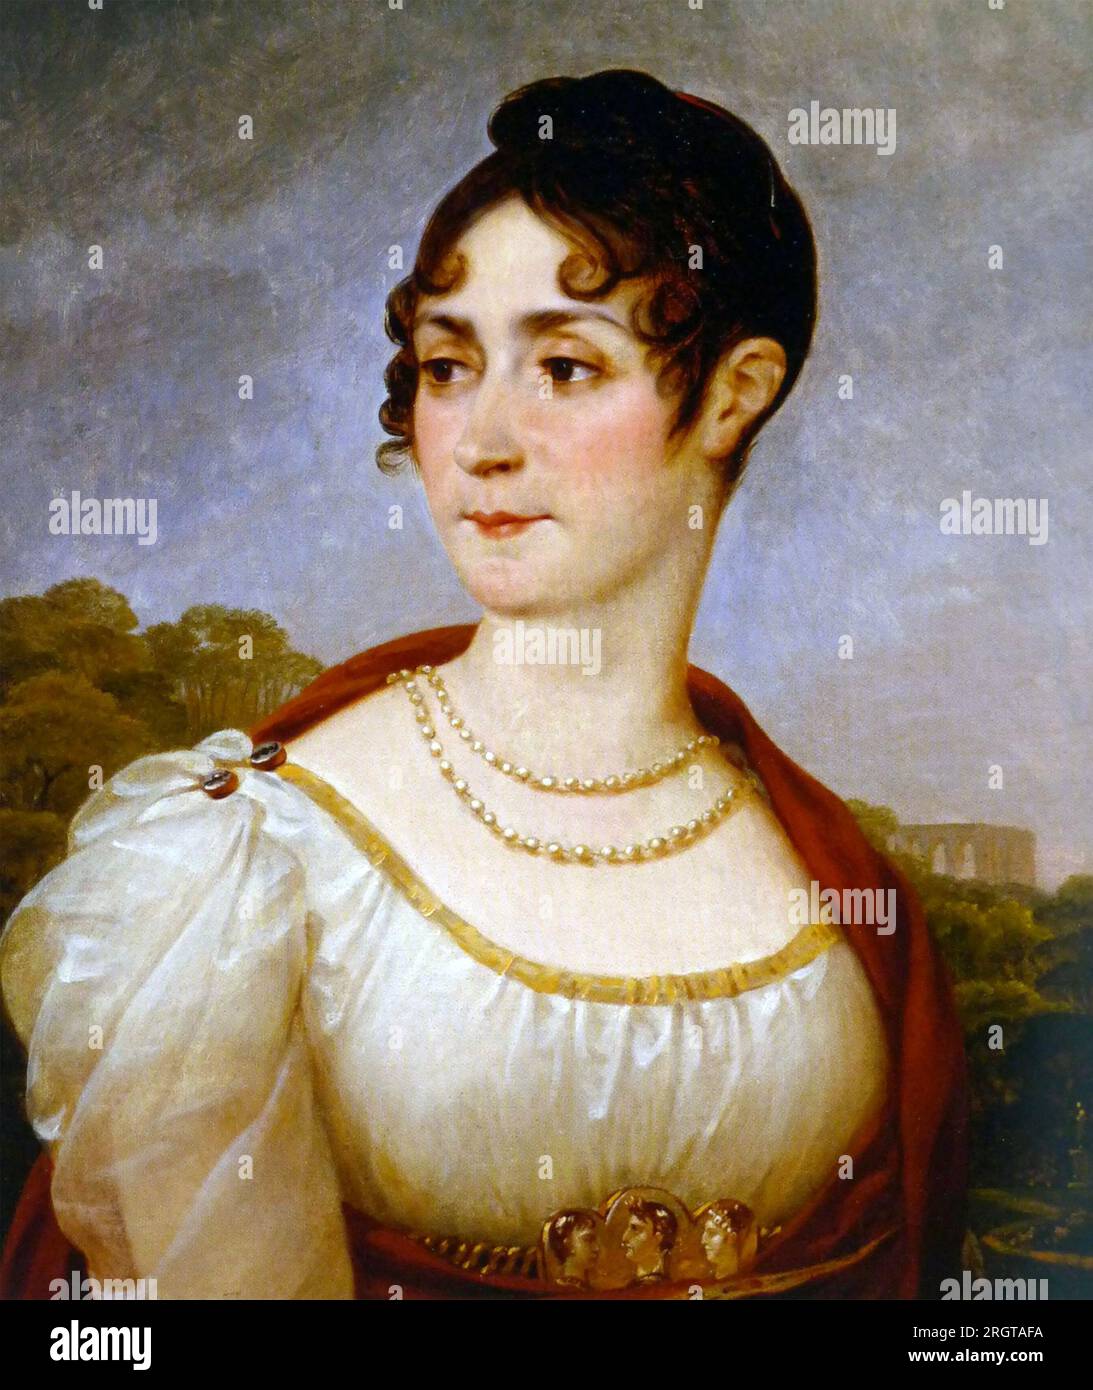 L'IMPERATRICE GIUSEPPINA BONAPARTE (1763-1814) moglie di Napoleone. Dipinto di Antoine-Jean Gros intorno al 1809 Foto Stock